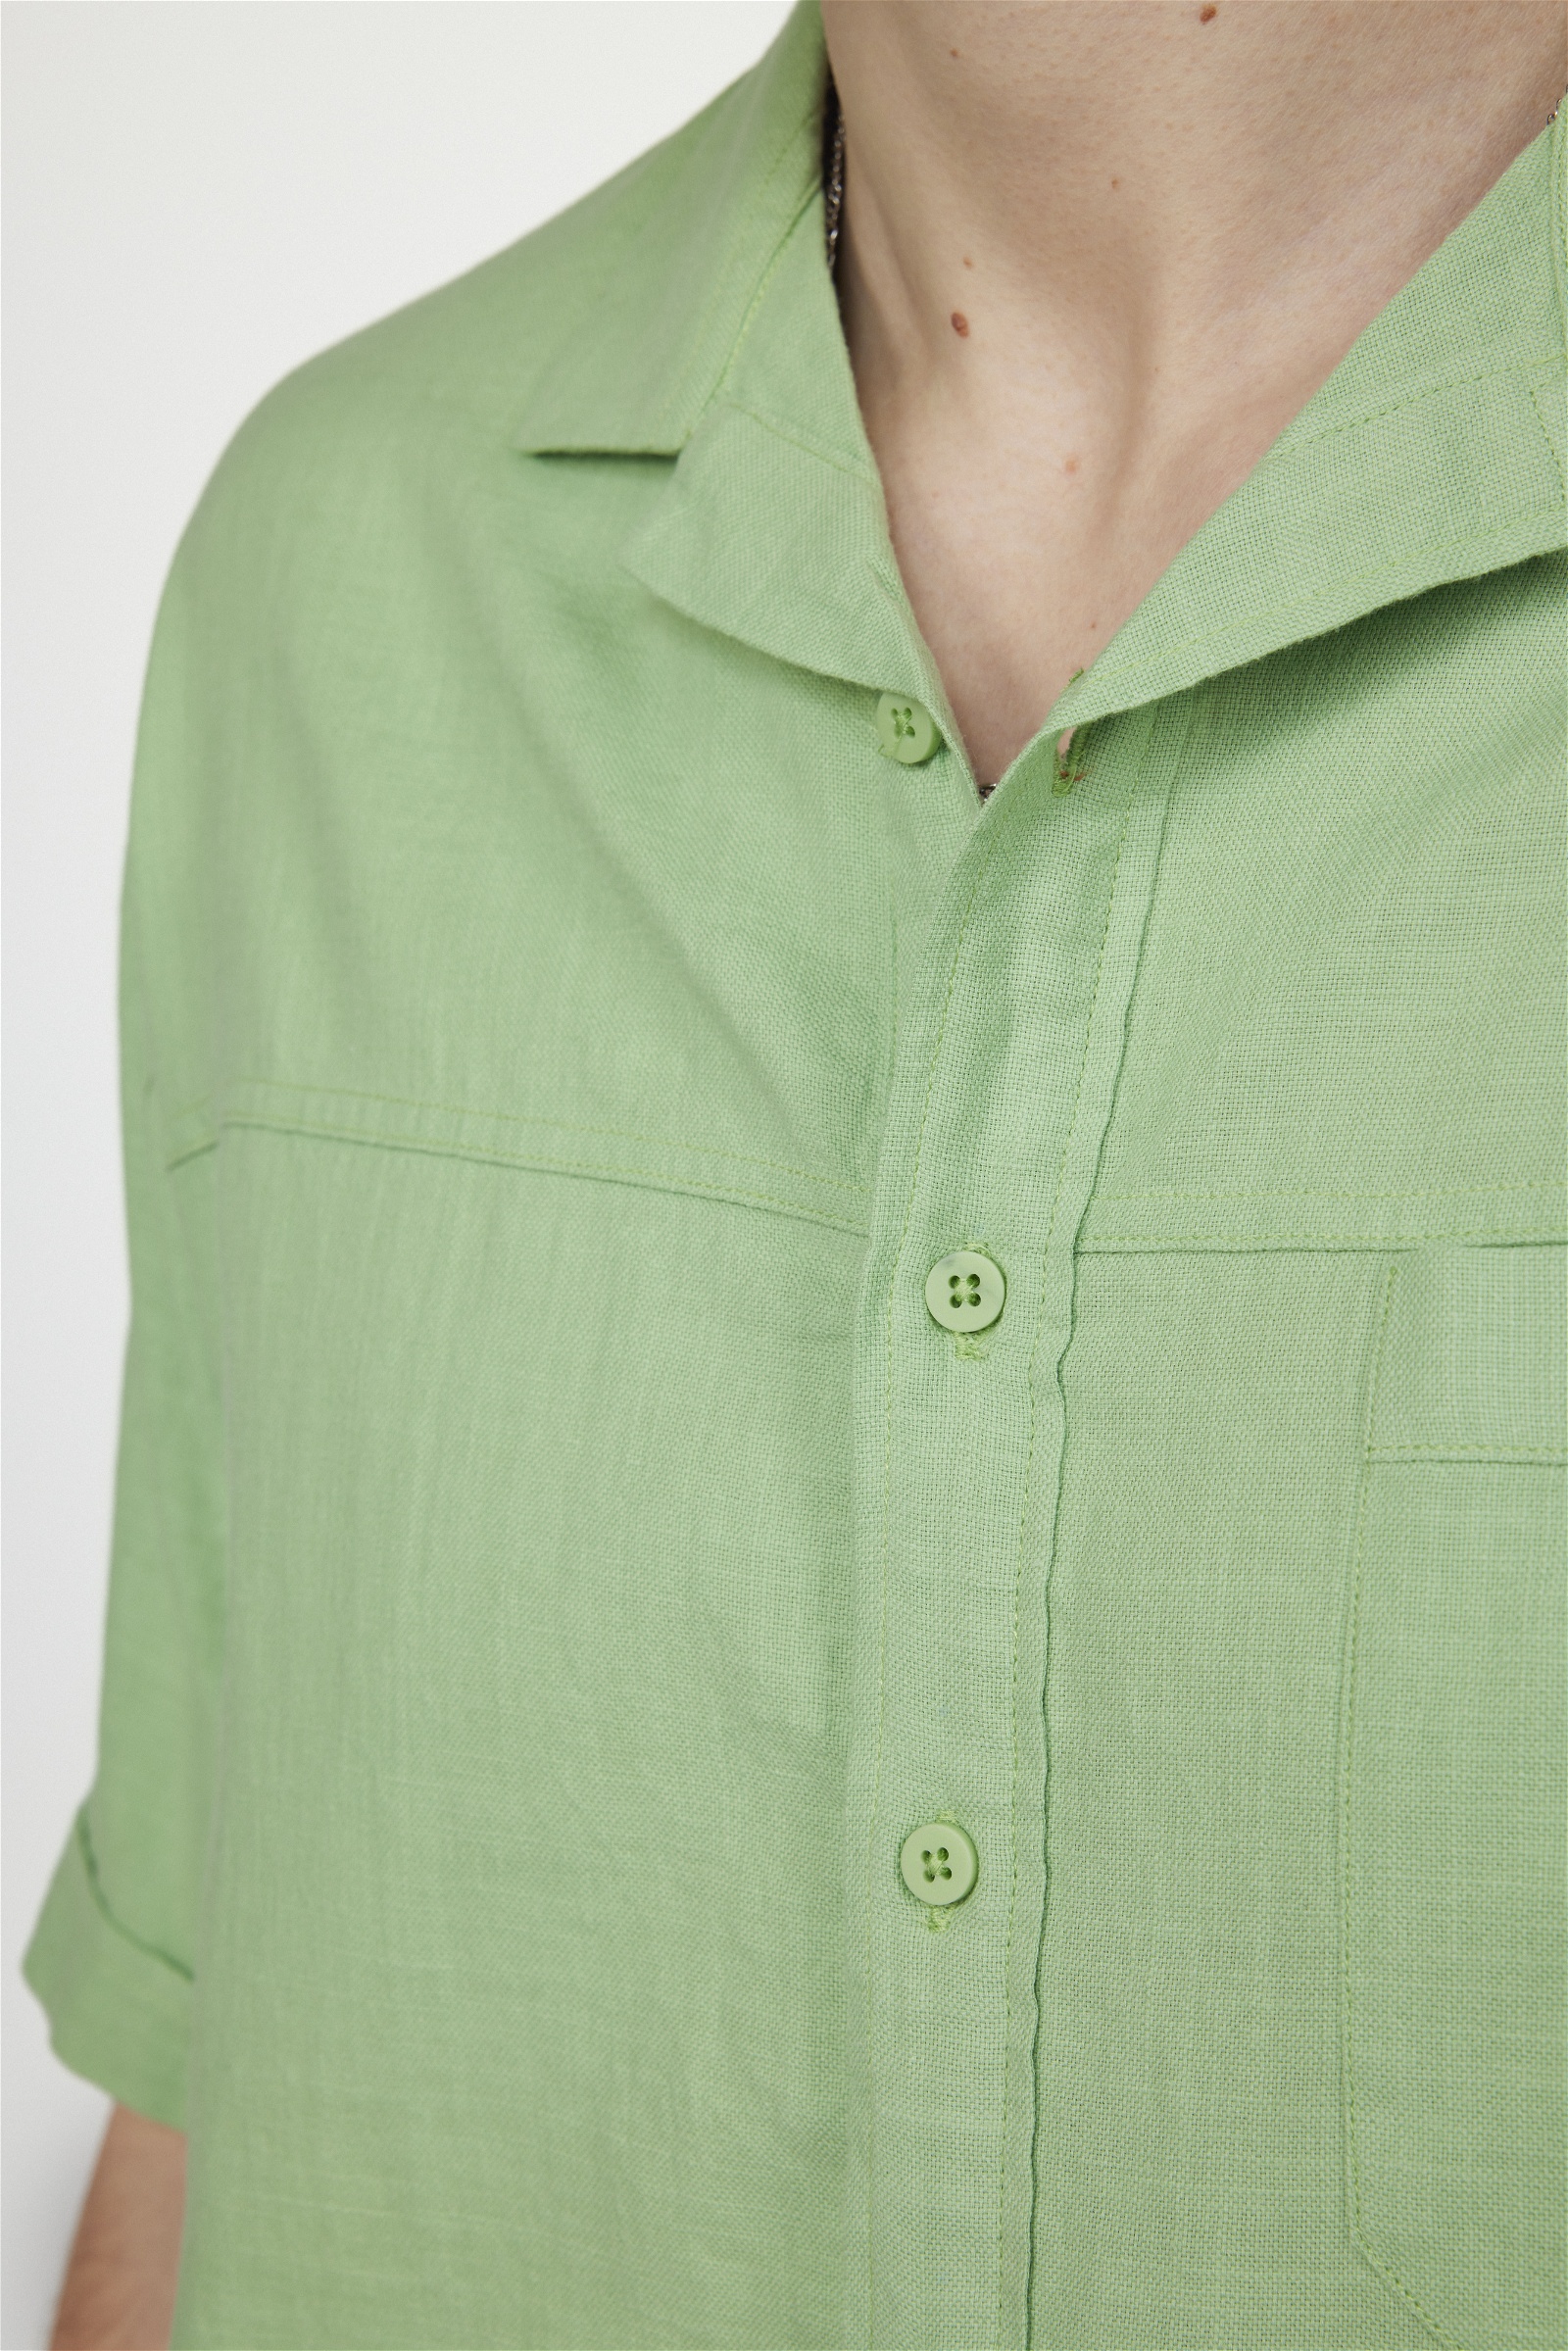 Plain Green Shirt